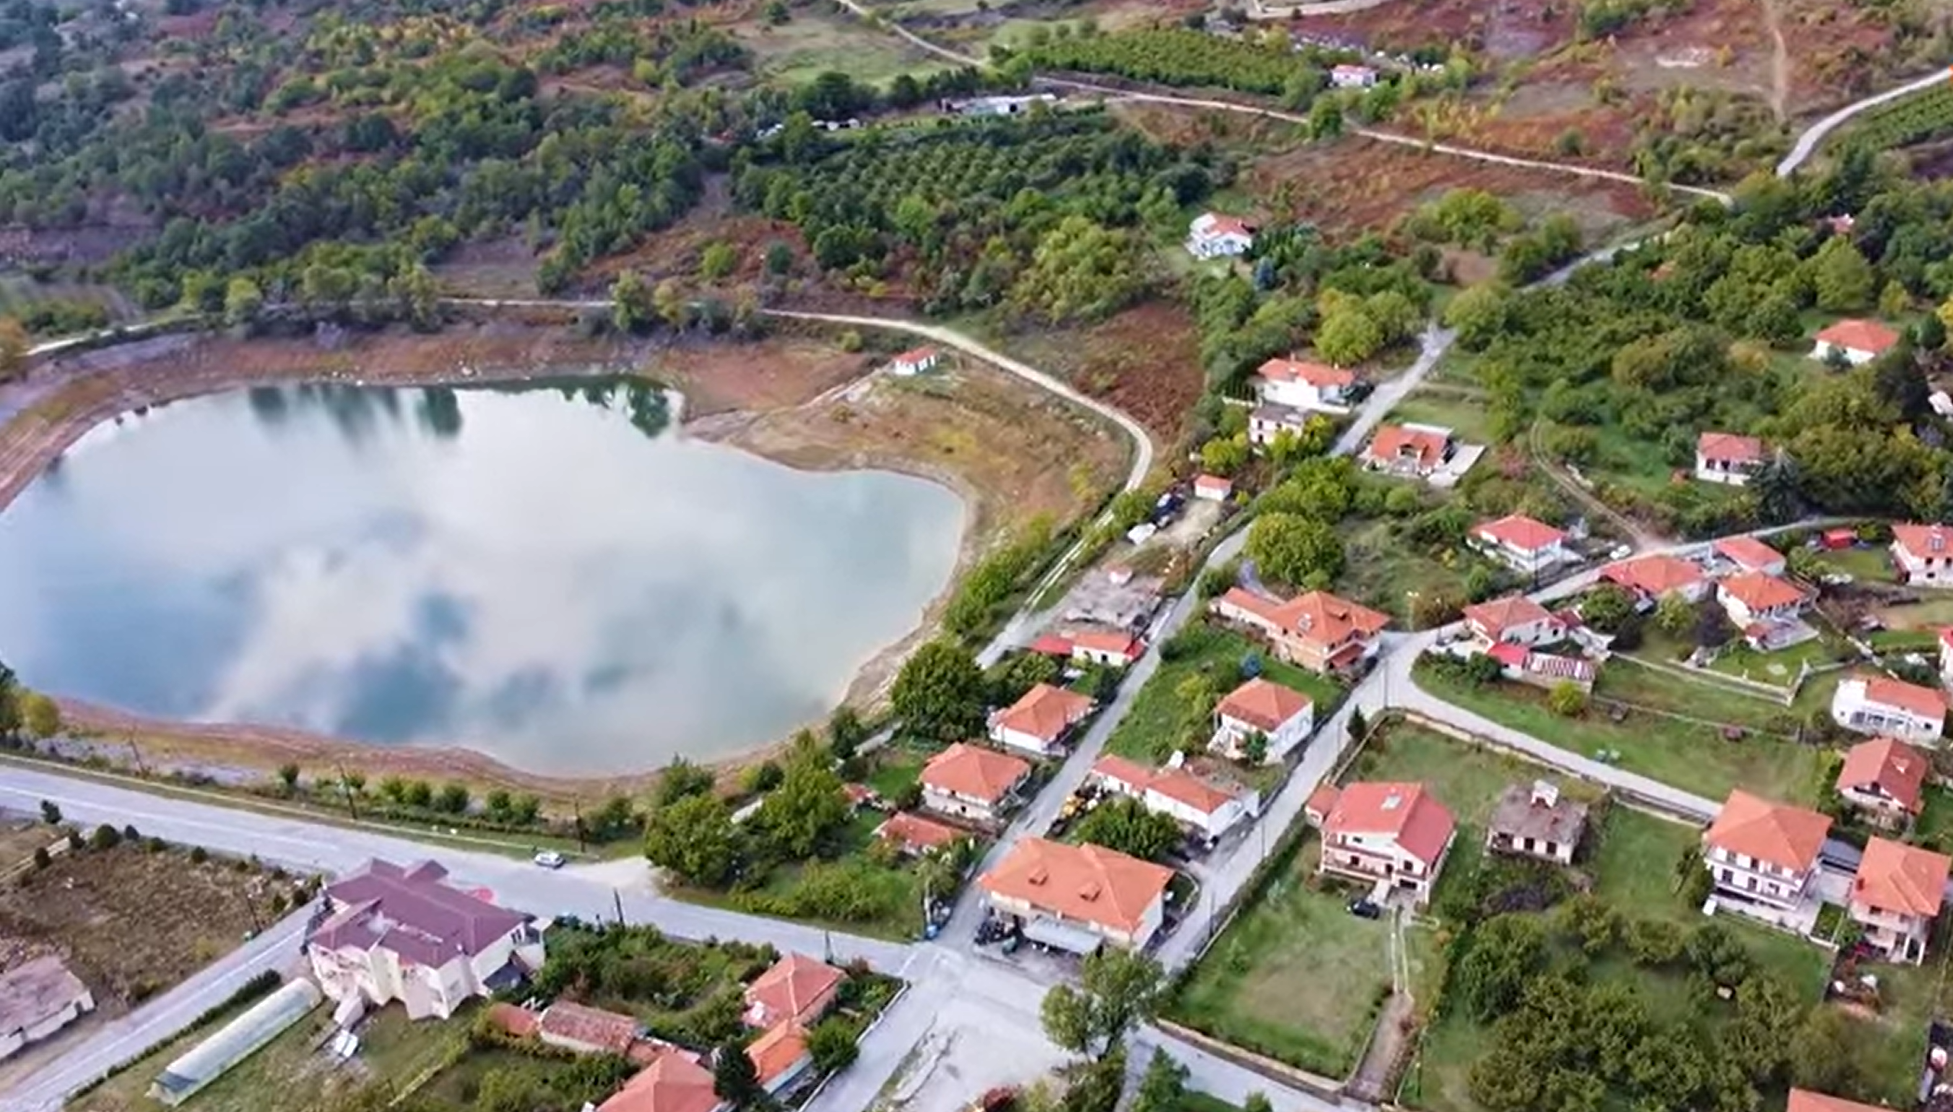 Δείτε το χωριό με τις τρεις τεχνητές λίμνες και τον μικρό καταρράκτη